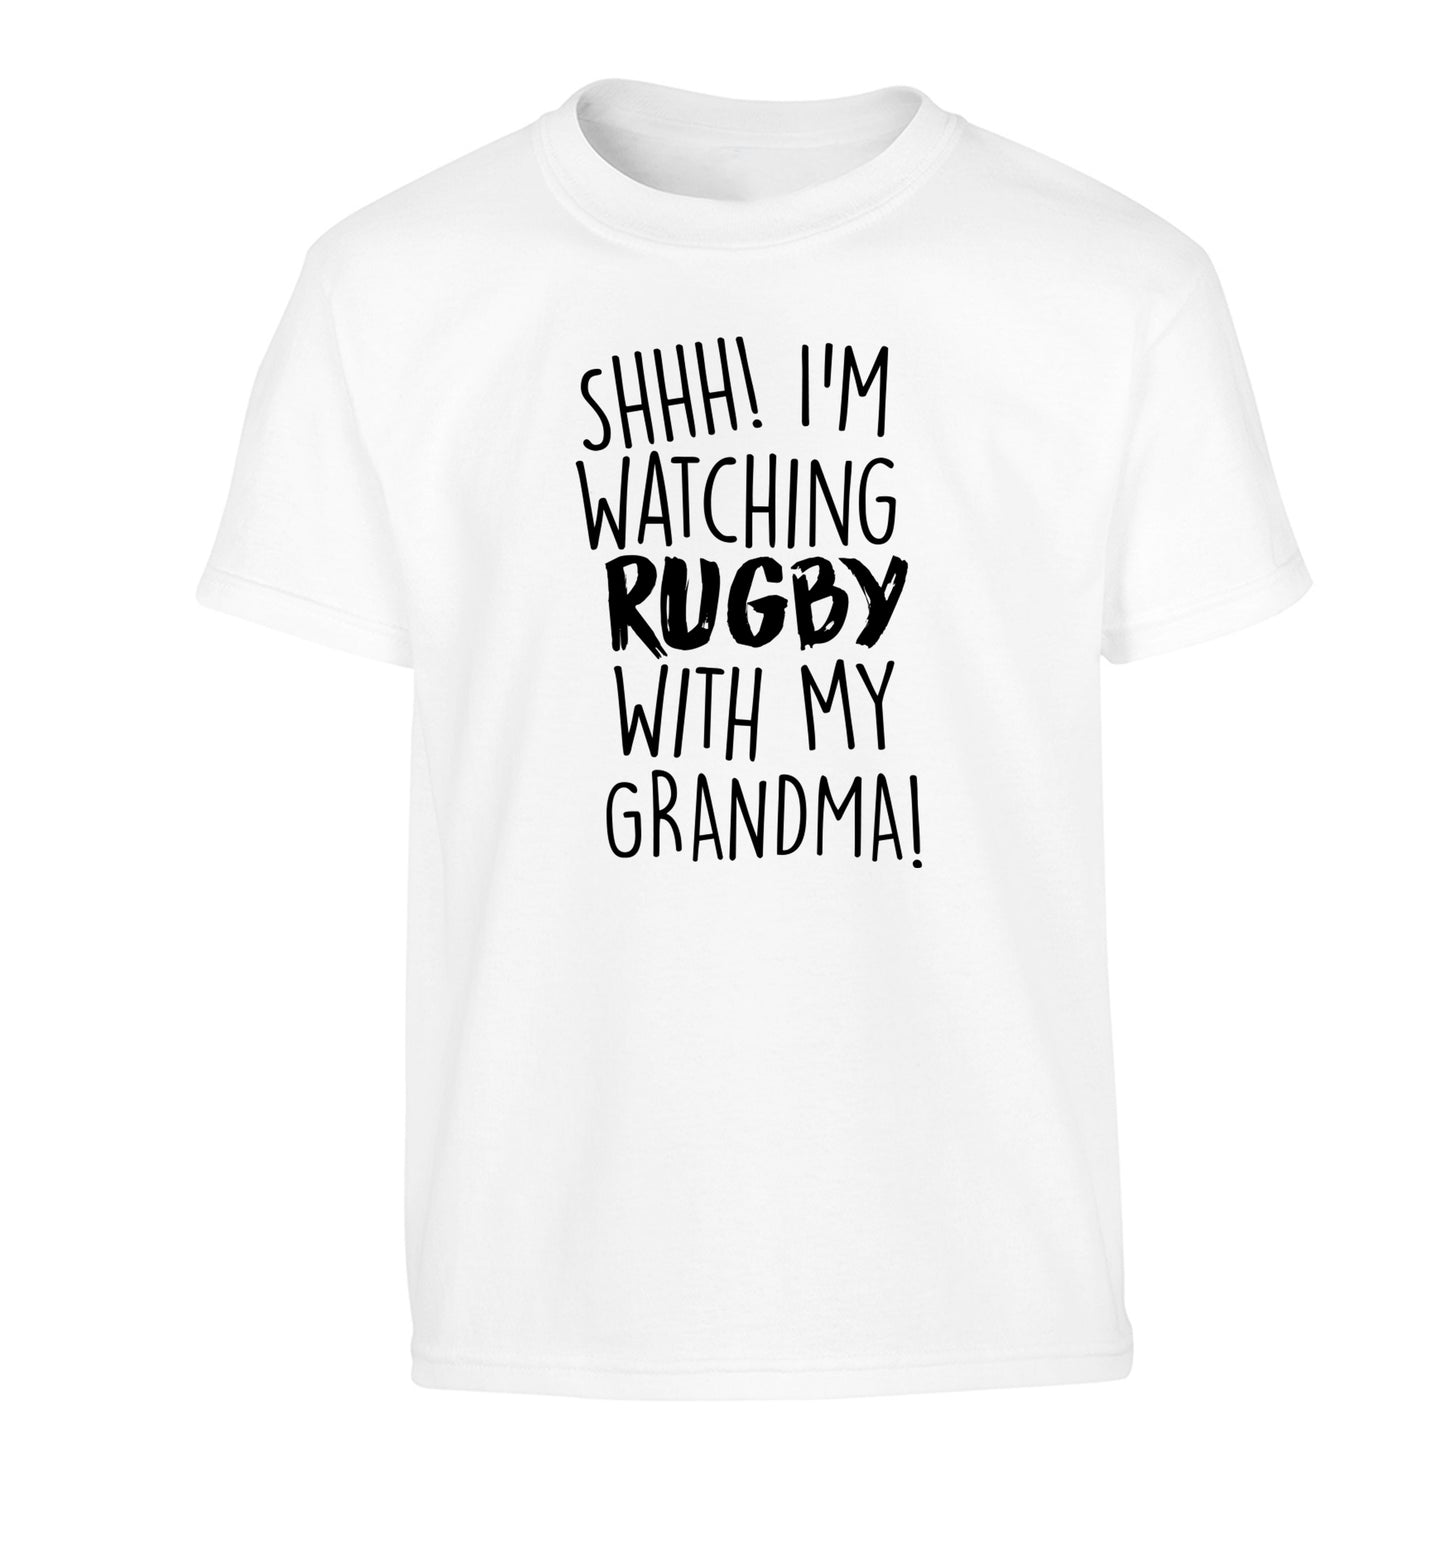 Shh I'm watching rugby with my grandma Children's white Tshirt 12-13 Years